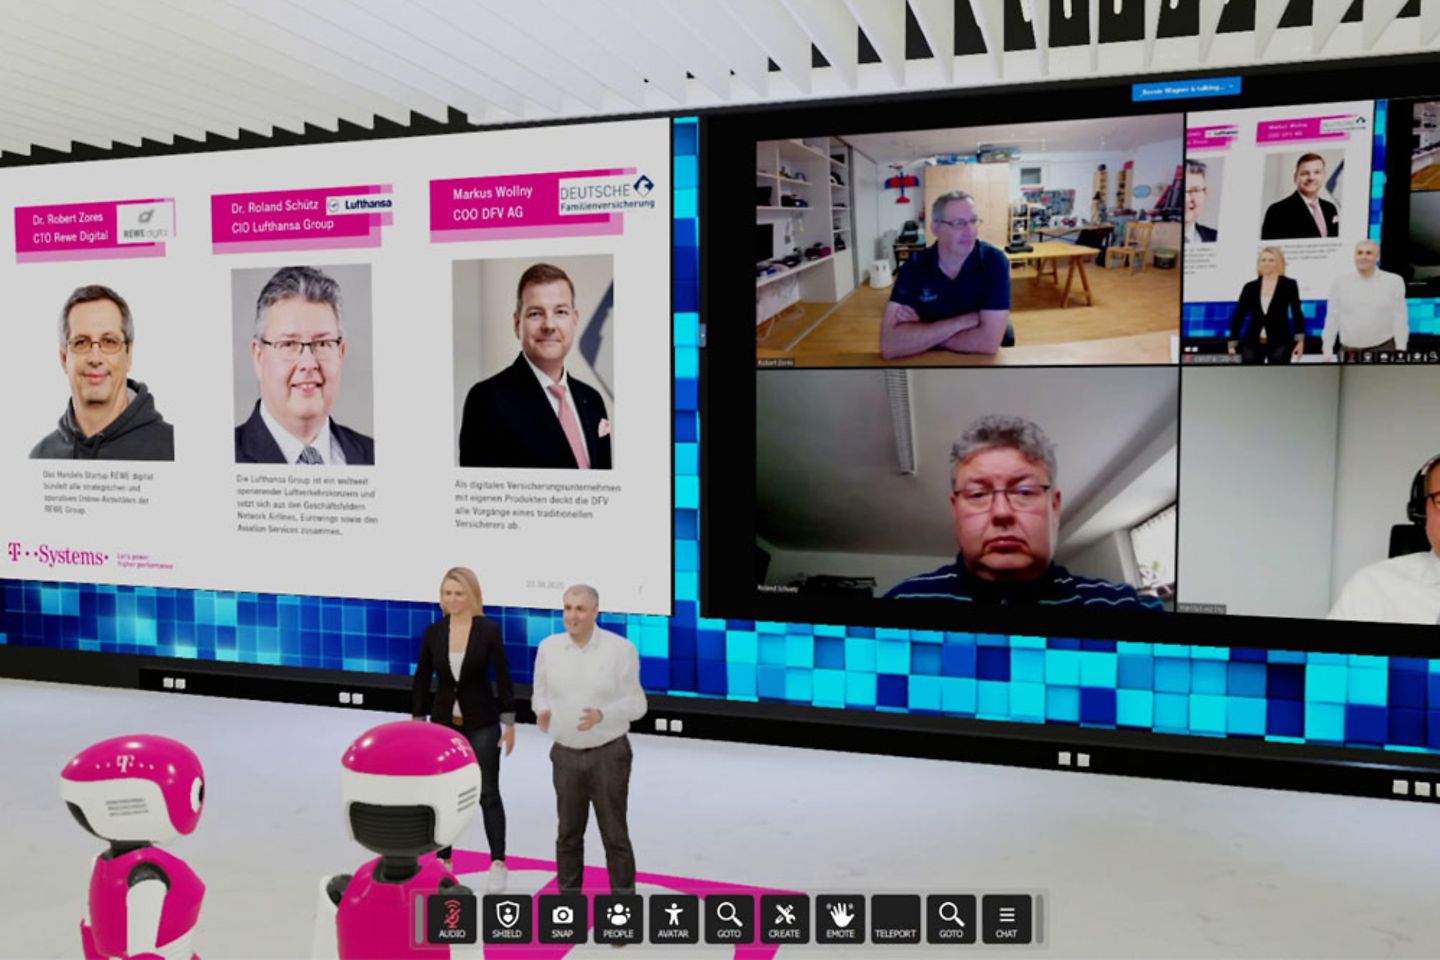 Vidéoconférence dans une salle virtuelle avec deux personnes sur un écran via webcam et deux animateurs virtuels